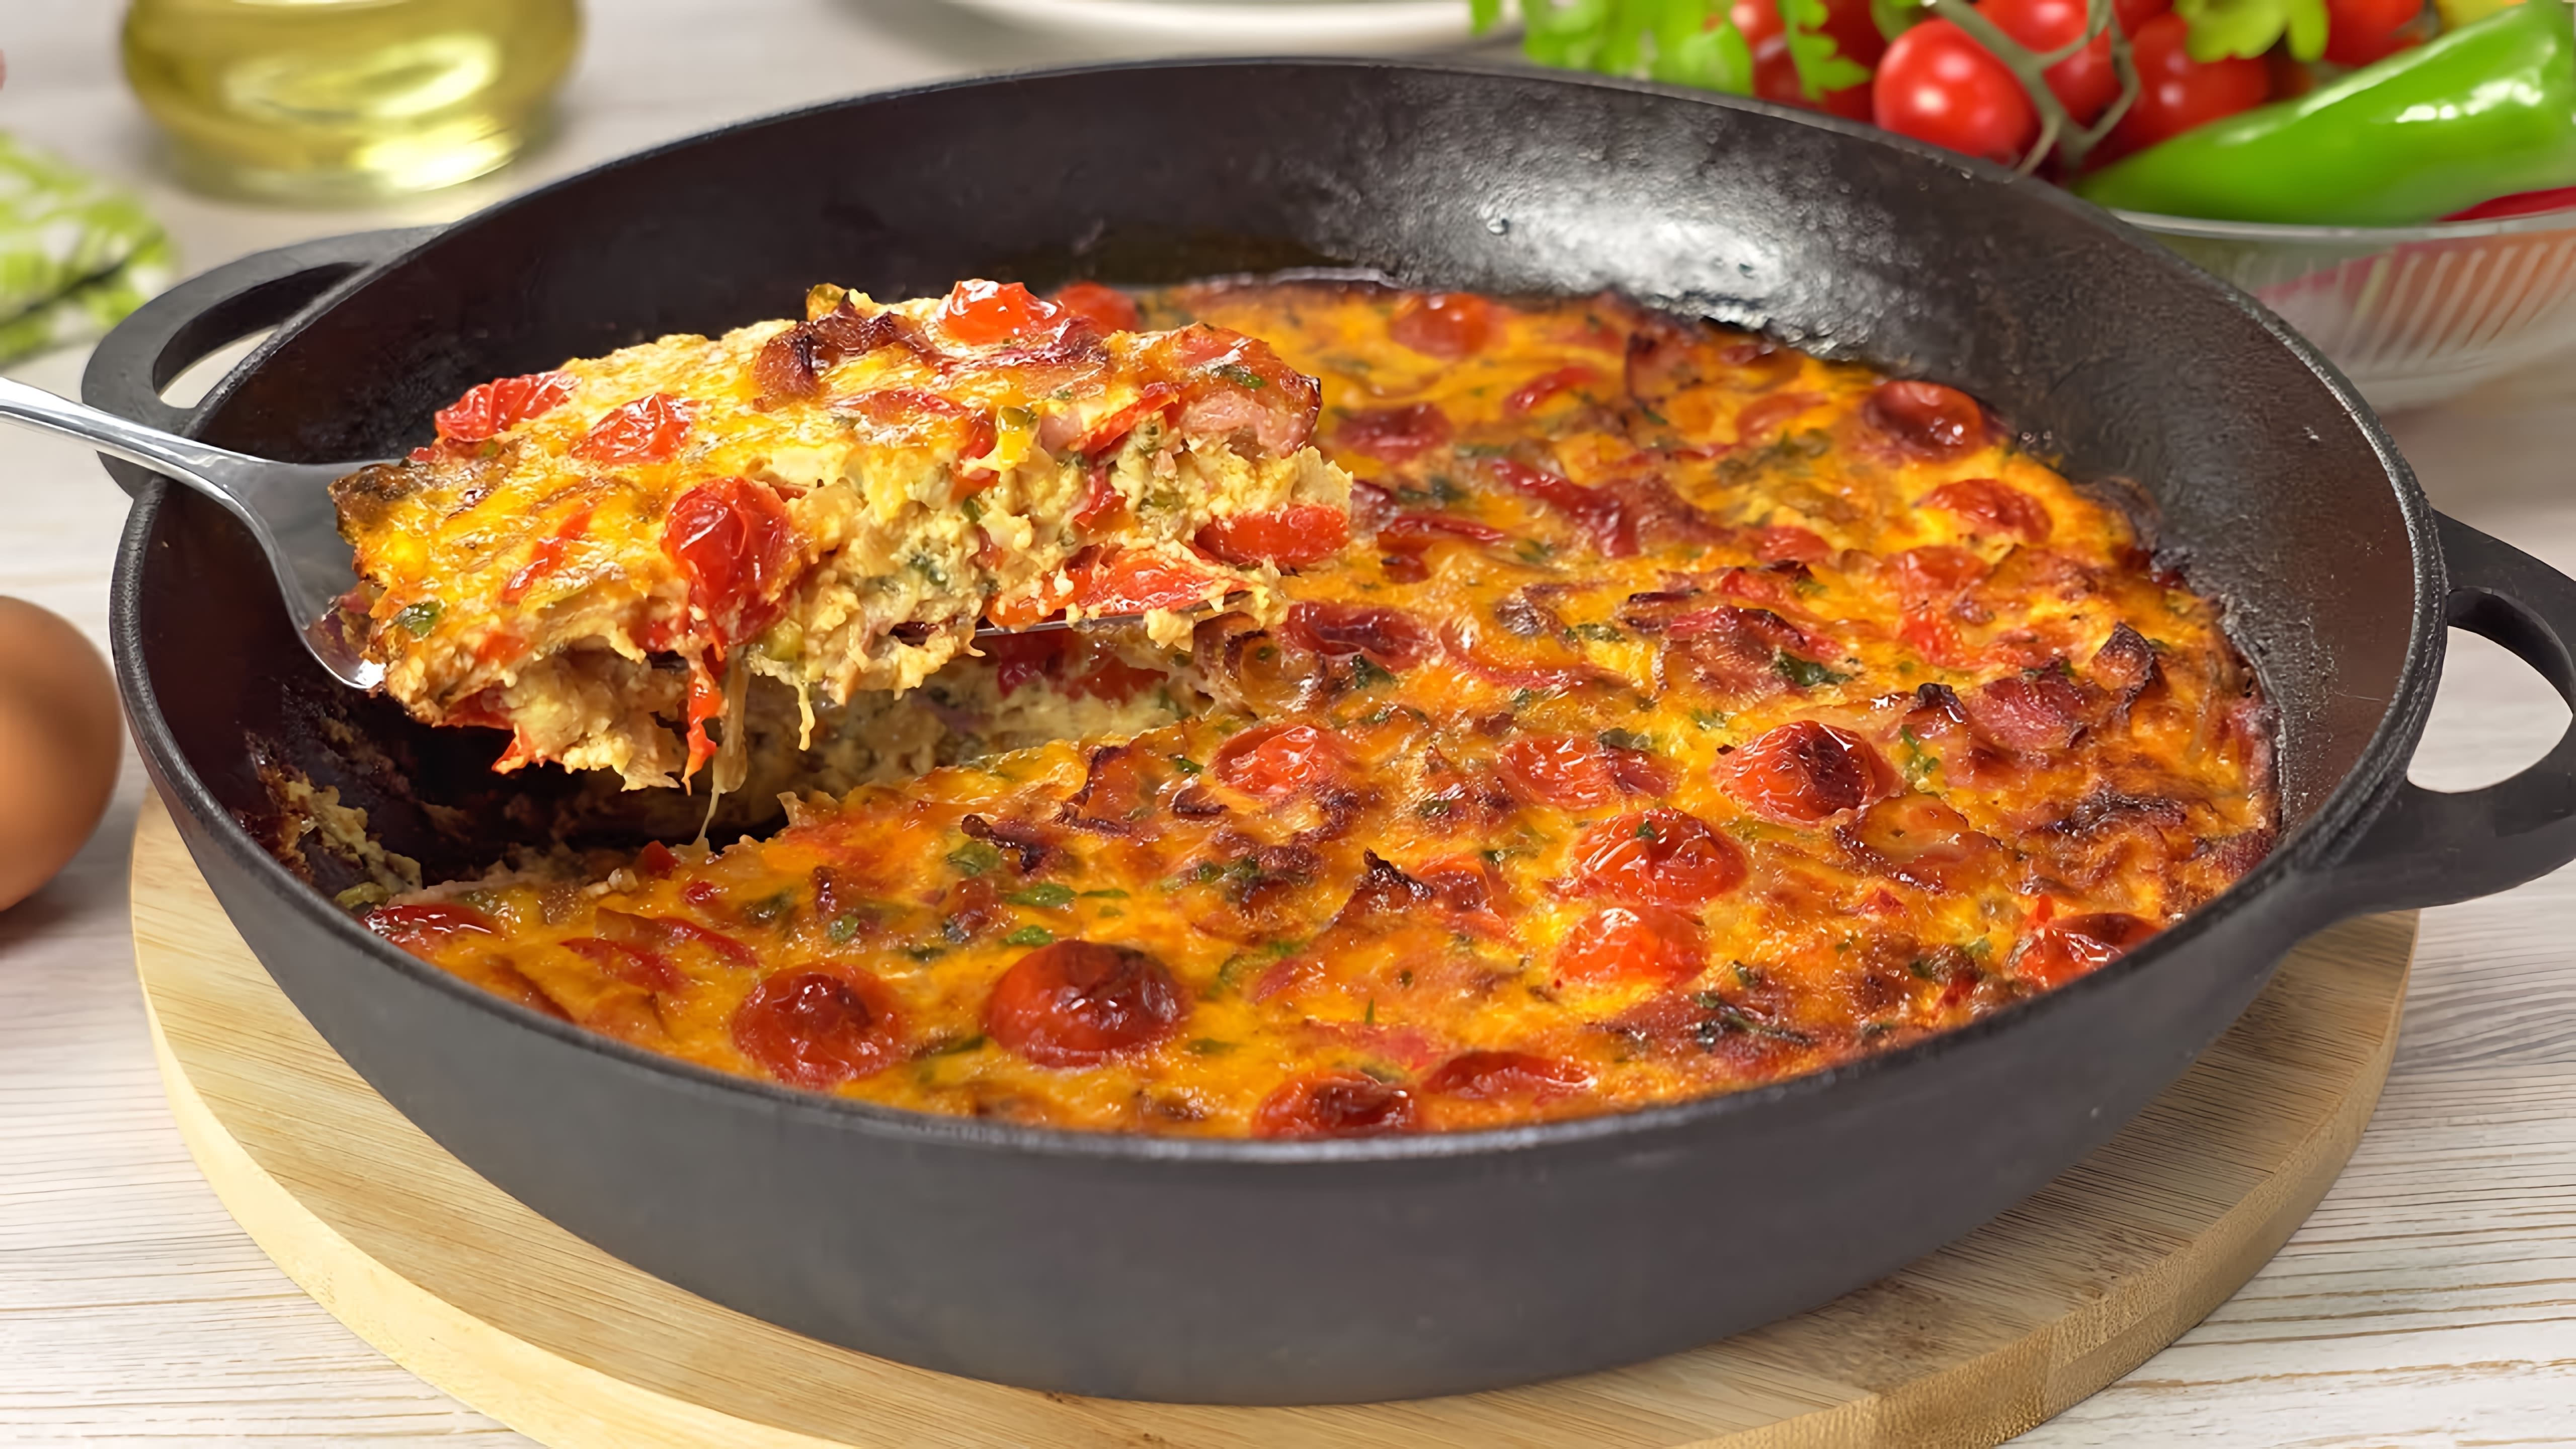 В данном видео демонстрируется рецепт приготовления популярного итальянского завтрака - фриттаты